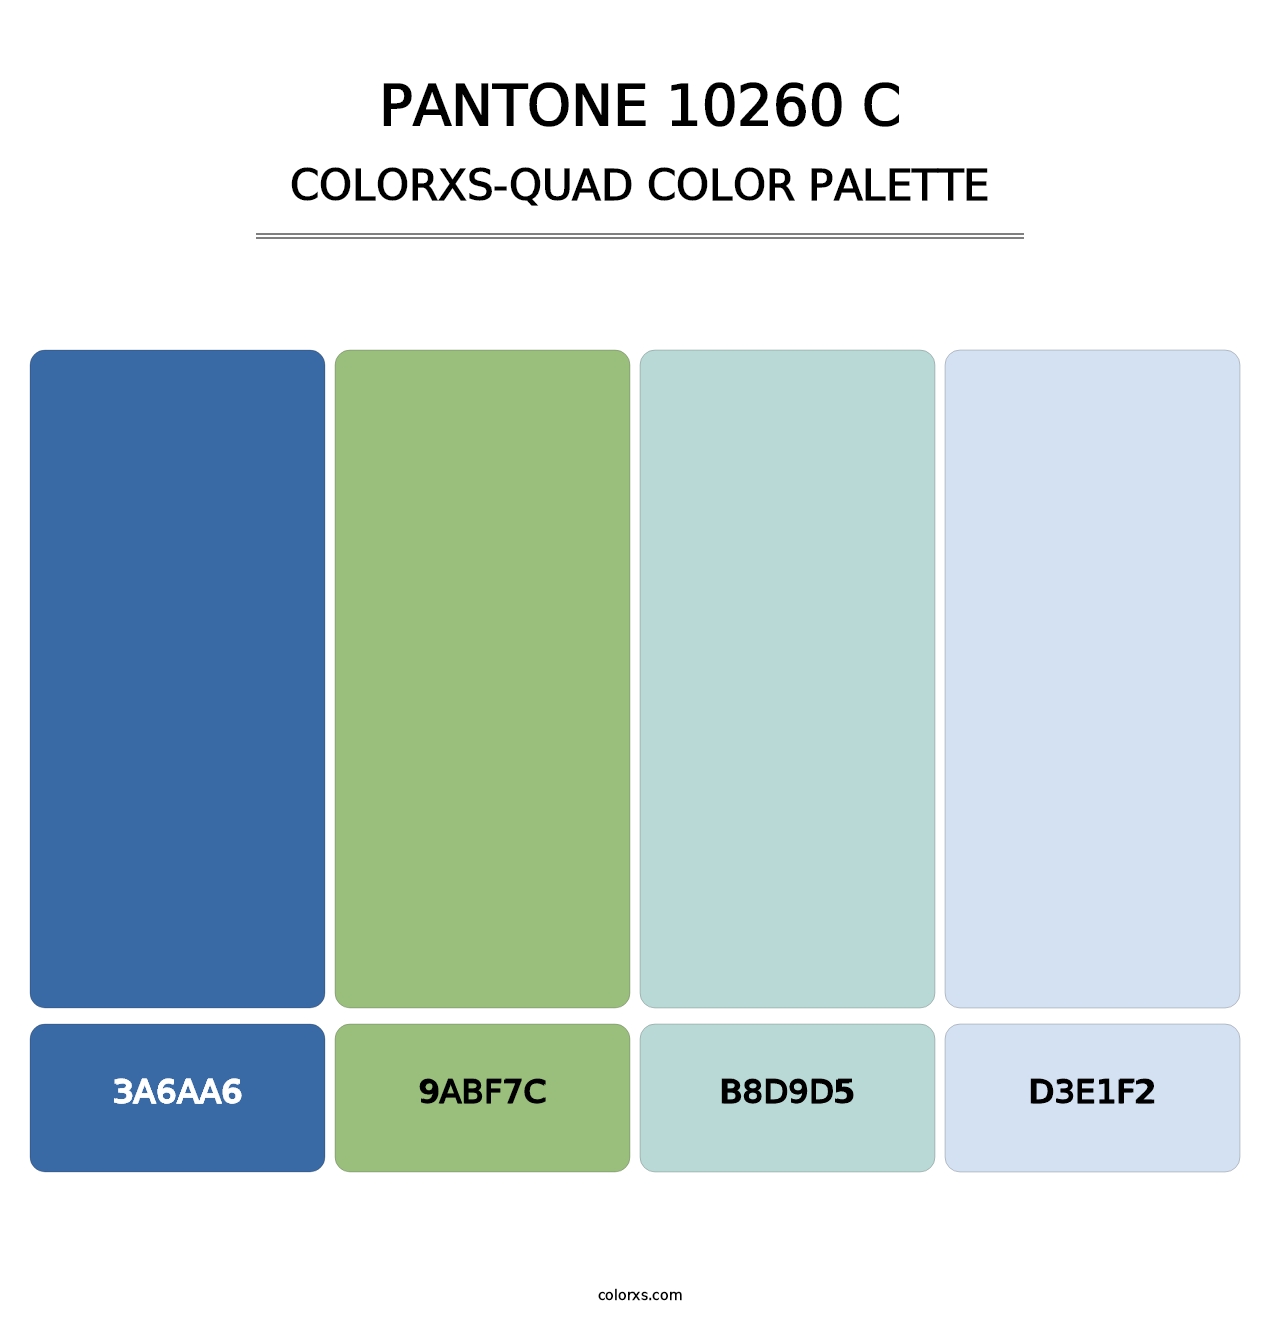 PANTONE 10260 C - Colorxs Quad Palette